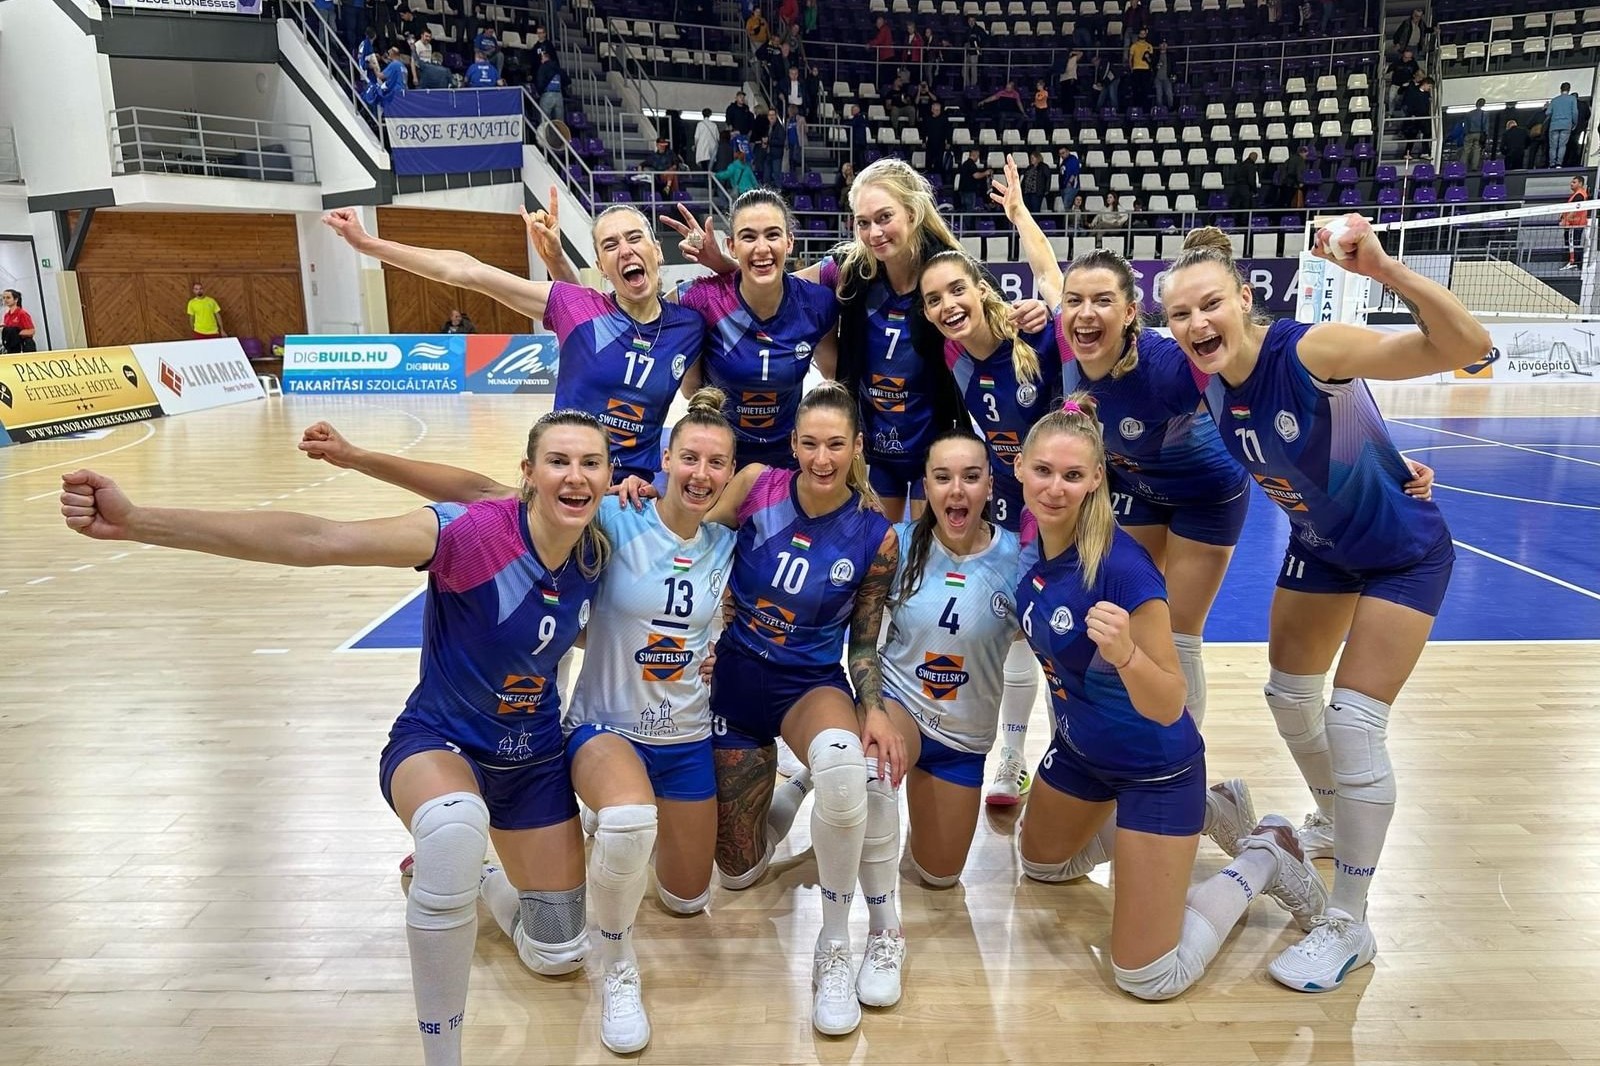 Волейболистка сборной Азербайджана набрала 20 очков в чемпионате Венгрии